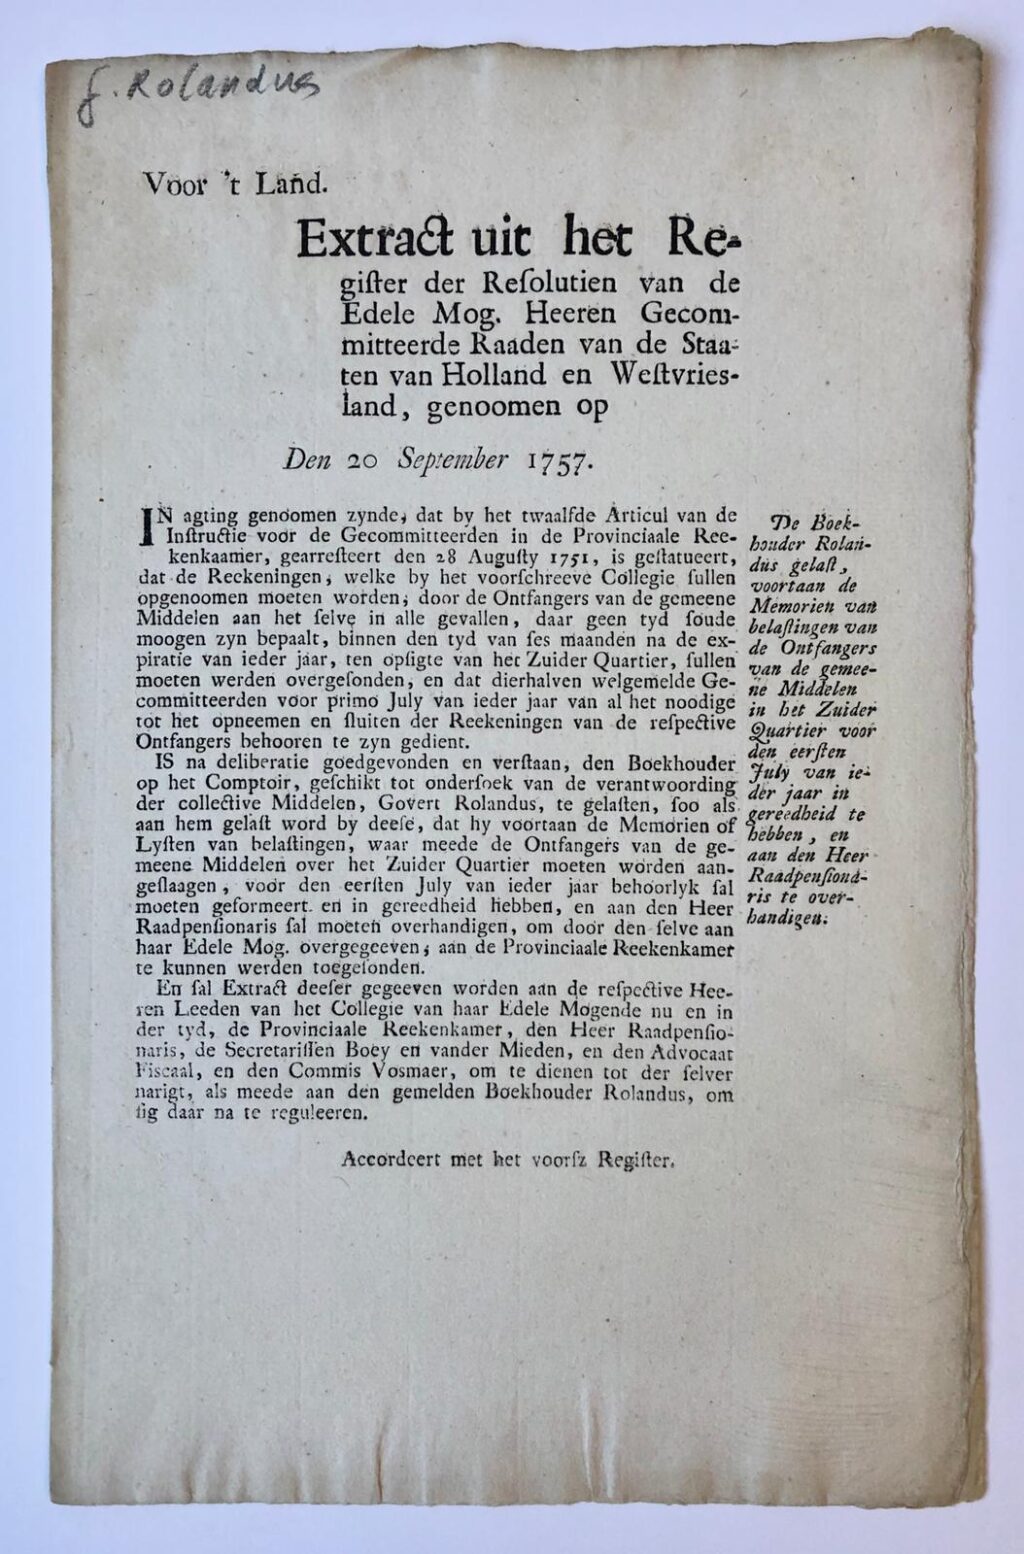 [PRINTED PUBLICATION, 1757, ACCOUNTANCY] Extract uit resolutiën Staten van Holland 20-9-1757 betr. instructie voor de boekhouder Rolandus, 1 pag. folio, gedrukt.